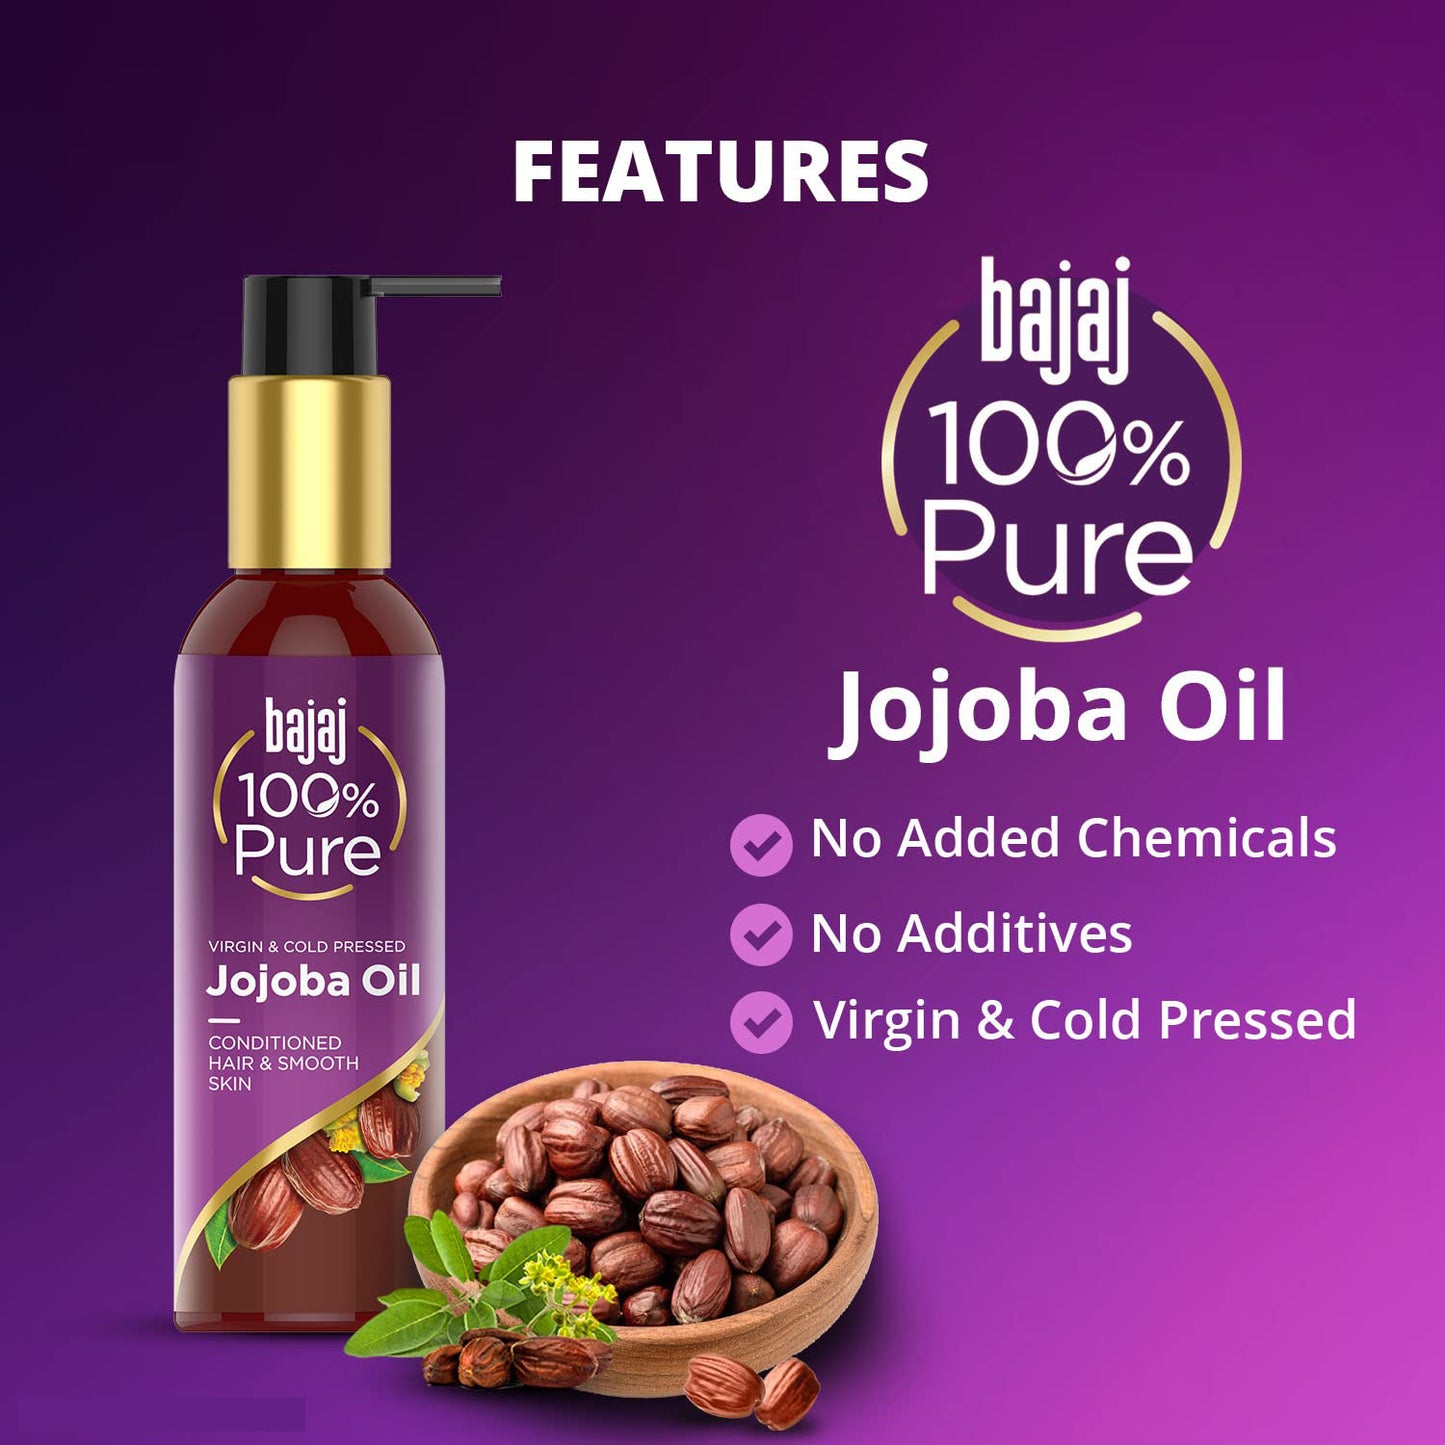 Bajaj 100% Pure Virgin & Cold Pressed Jojoba Oil 200ml